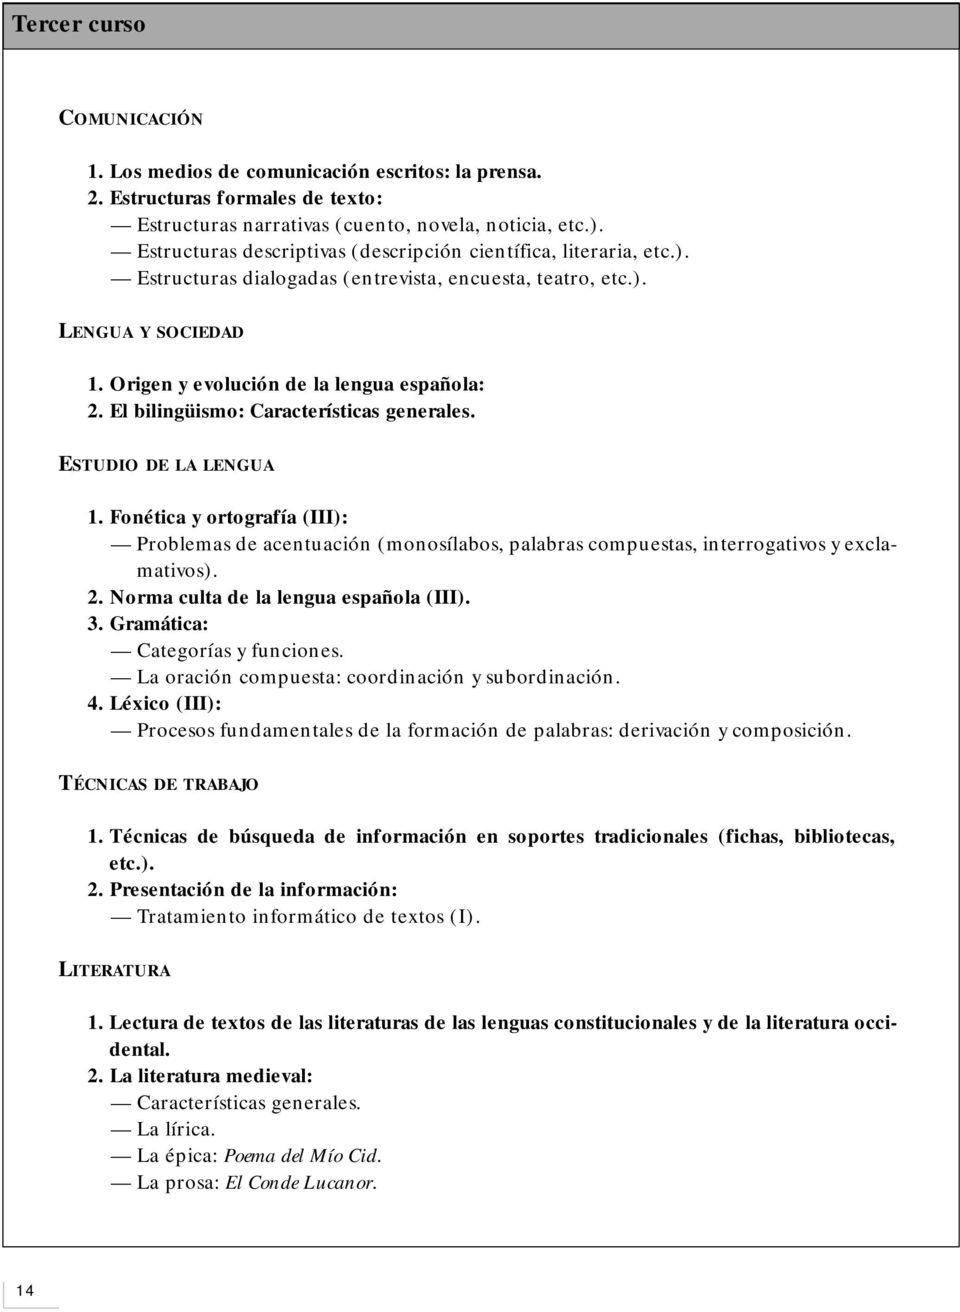 El bilingüismo: Características generales. ESTUDIO DE LA LENGUA 1. Fonética y ortografía (III): Problemas de acentuación (monosílabos, palabras compuestas, interrogativos y exclamativos). 2.